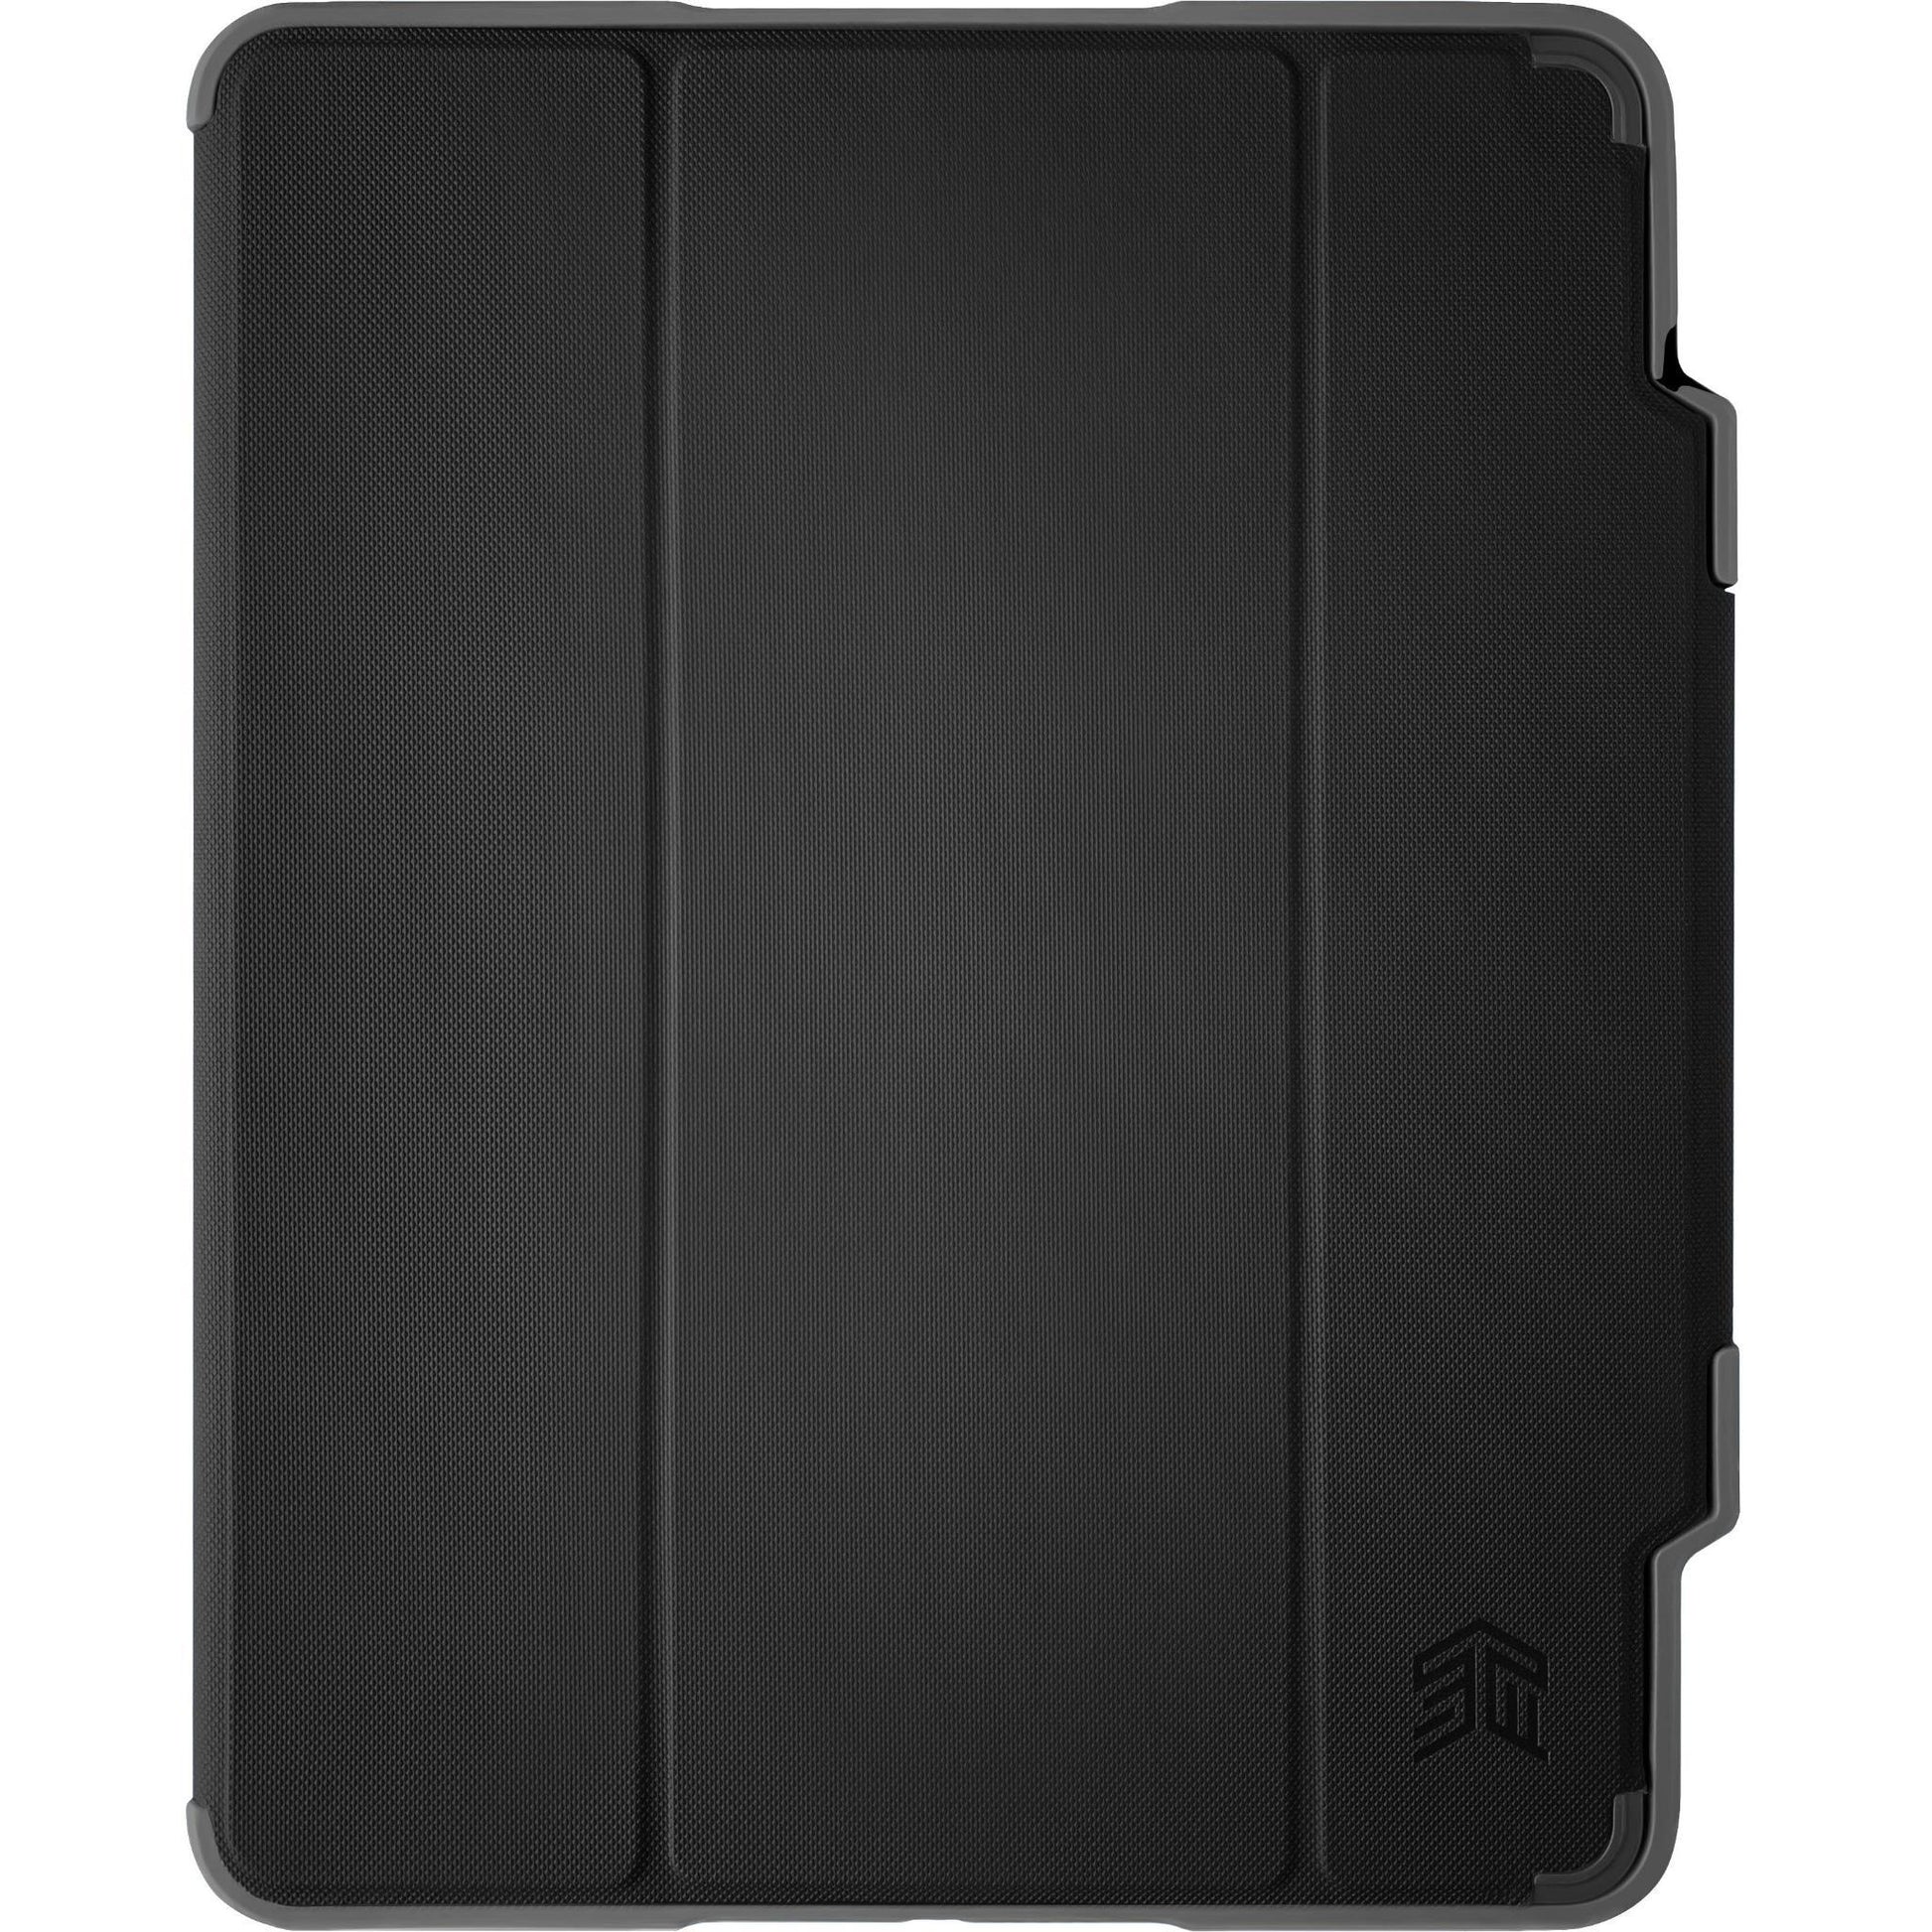 STM Dux Plus Case for iPad Pro 12.9" 3/4/5/6th Gen - Black - Marknet Technology